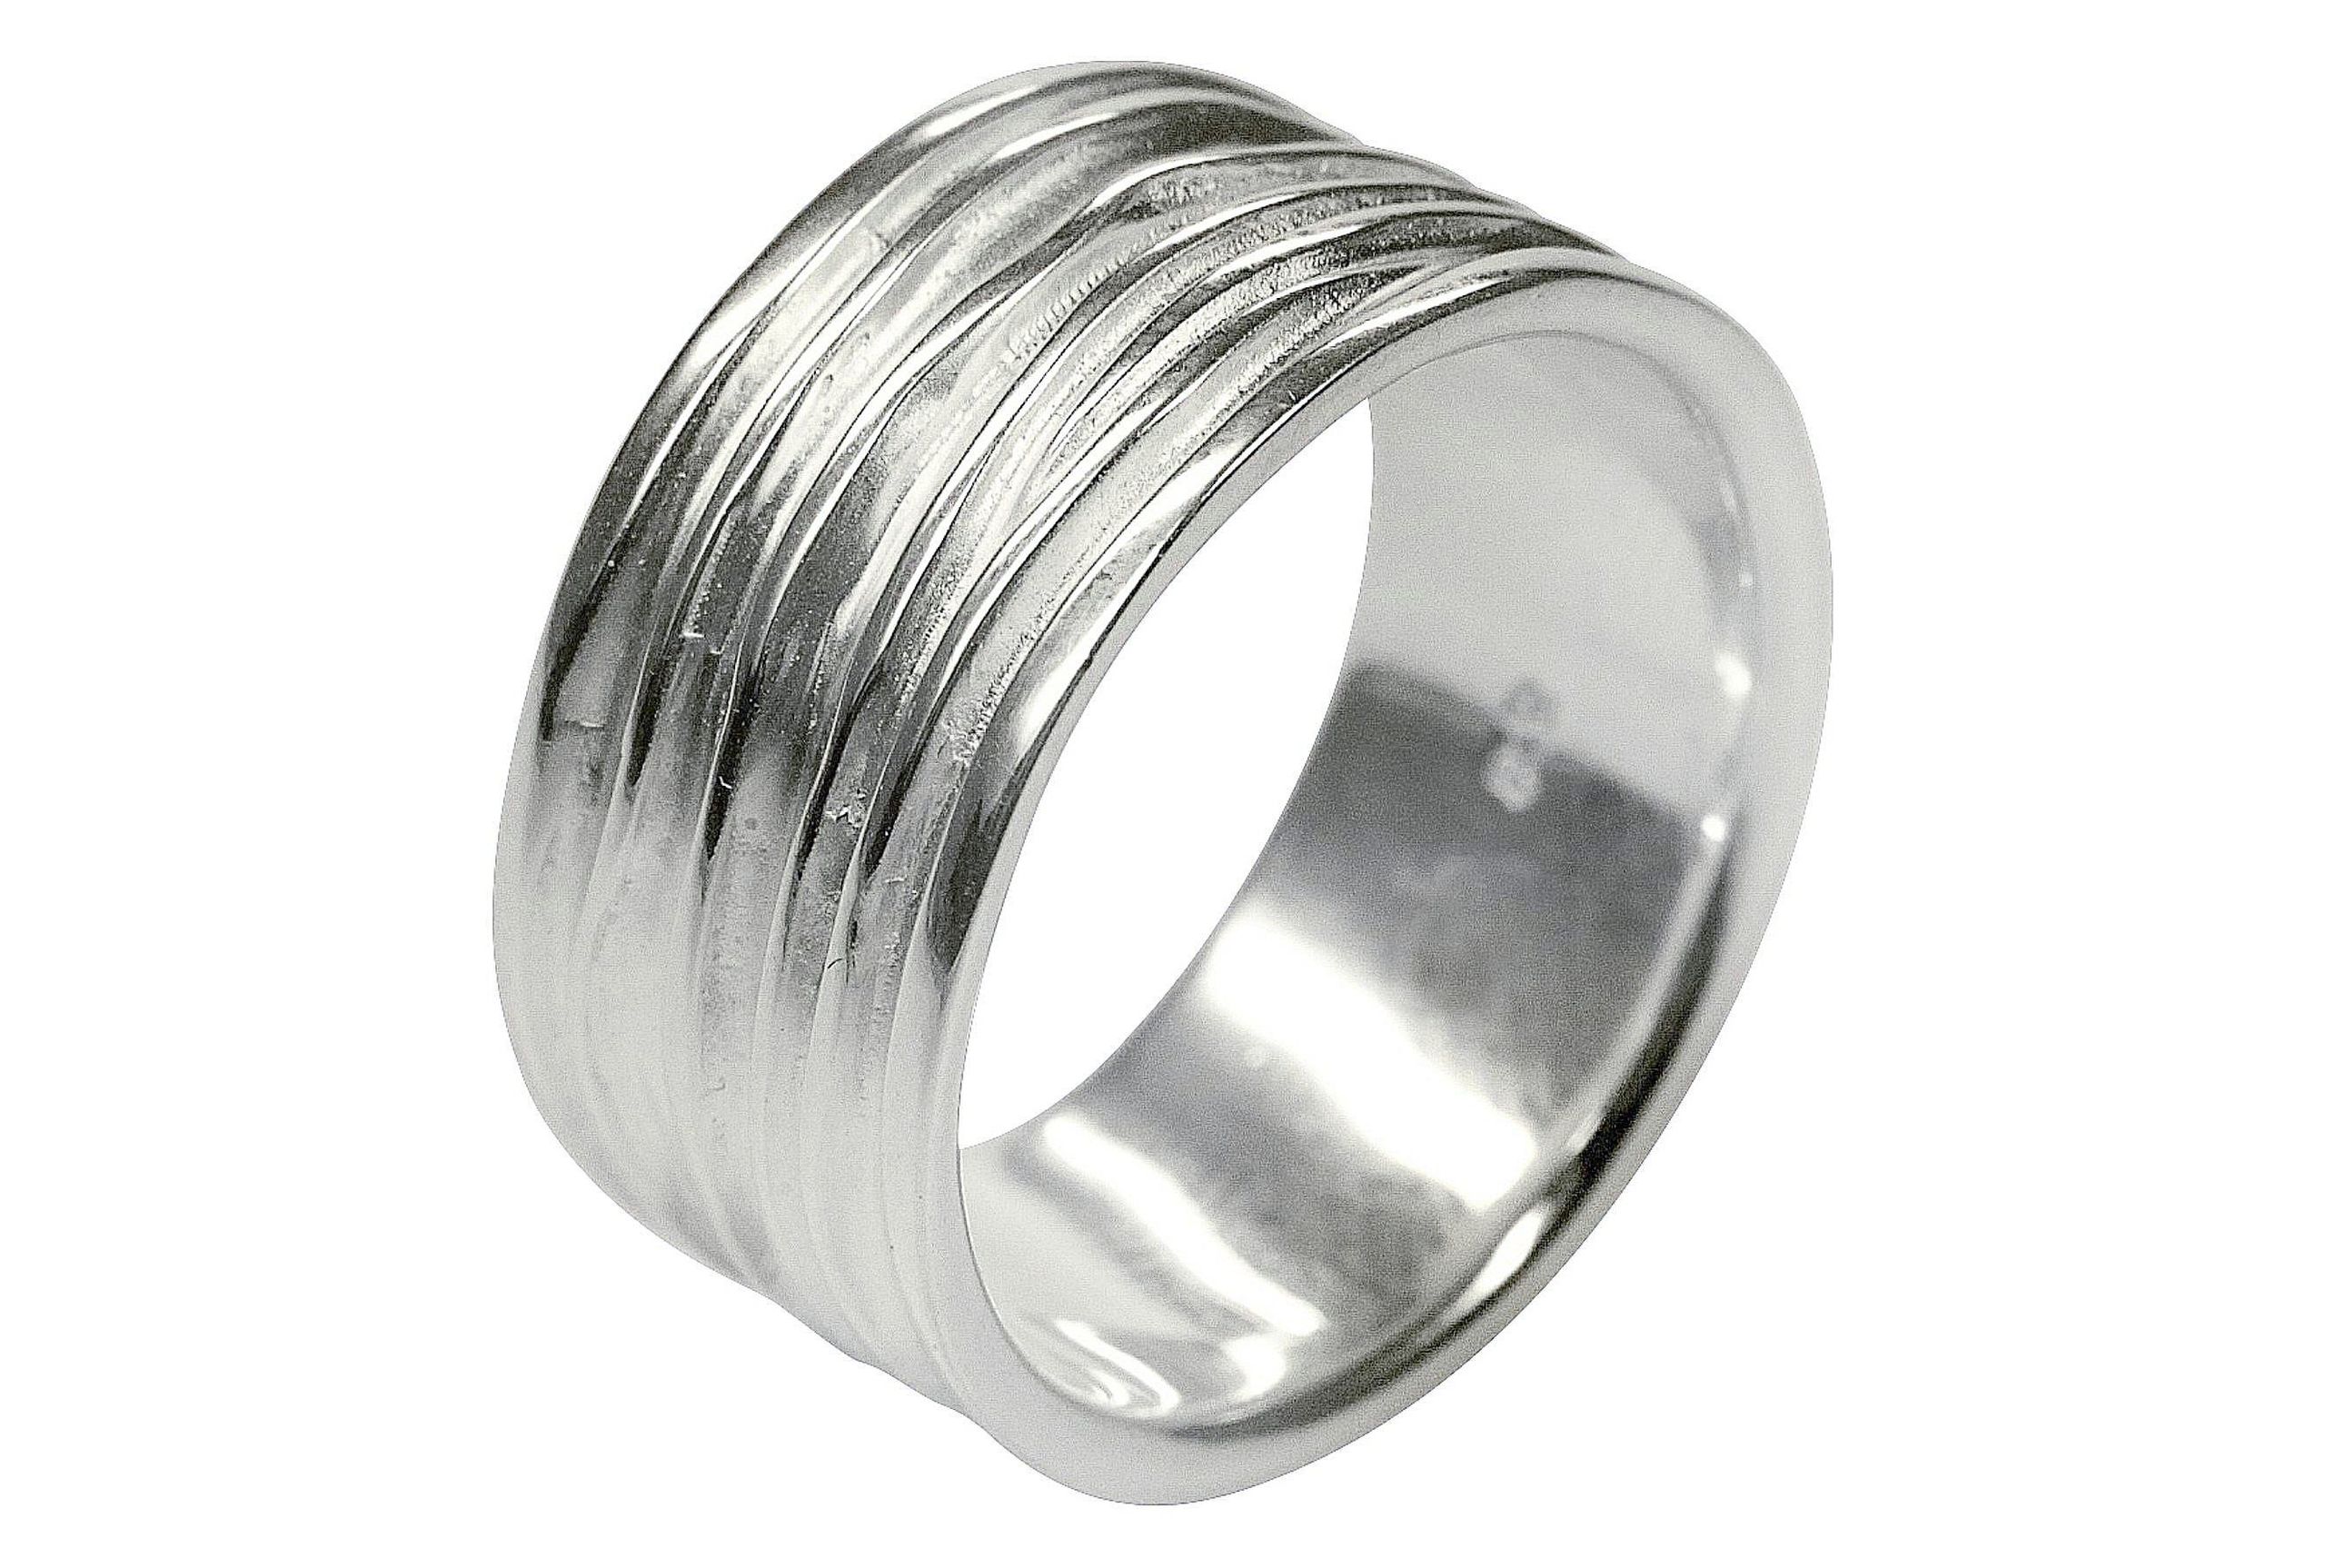 Breiter Silberring mit einer gefalteten Wellenstruktur als Oberfläche. Der Ring bietet sich als Schmuck für Damen und für Herren an.